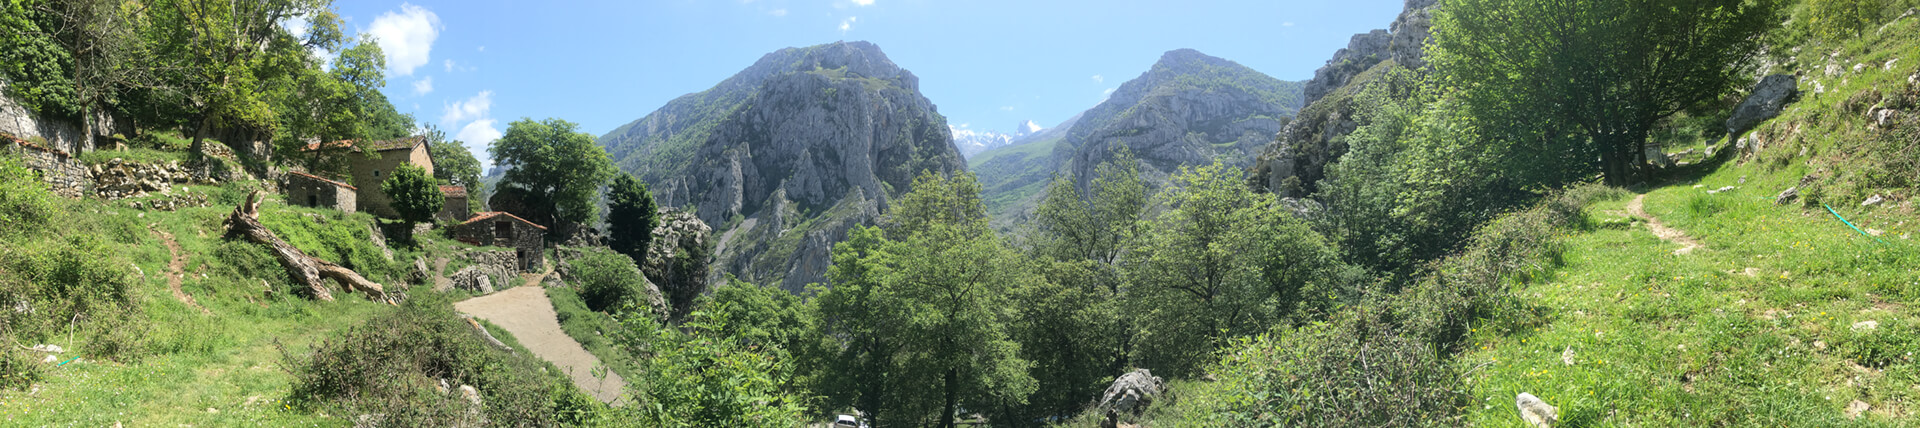 Blick auf den Berg Naranjo de Bulnes in Nordspanien